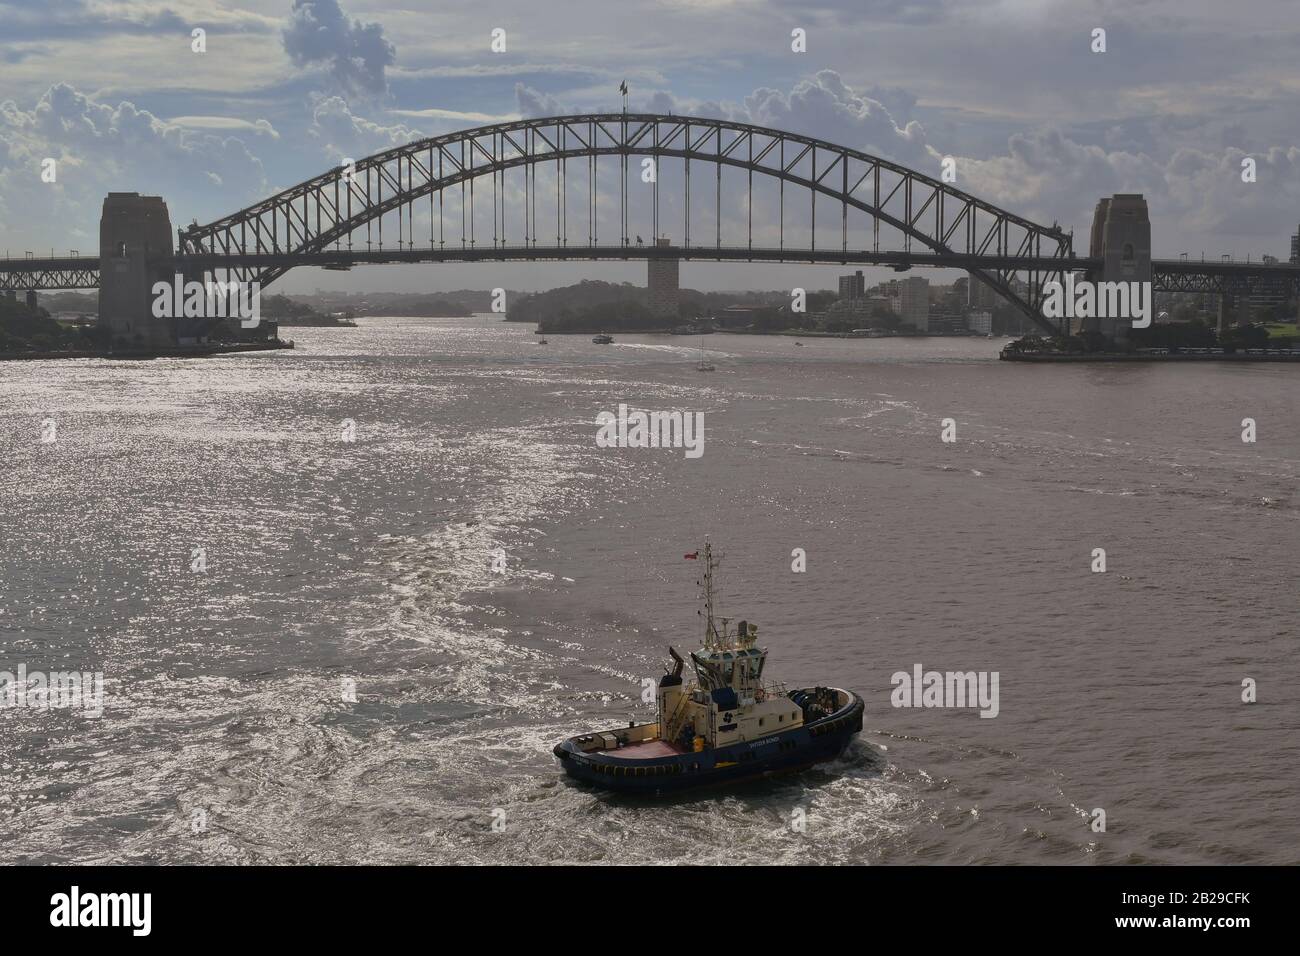 Sydney, NSW, Australien - 10. Februar 2020: Schleppboot im Hafen von Sydney mit Harbour Bridge im Hintergrund. Stockfoto